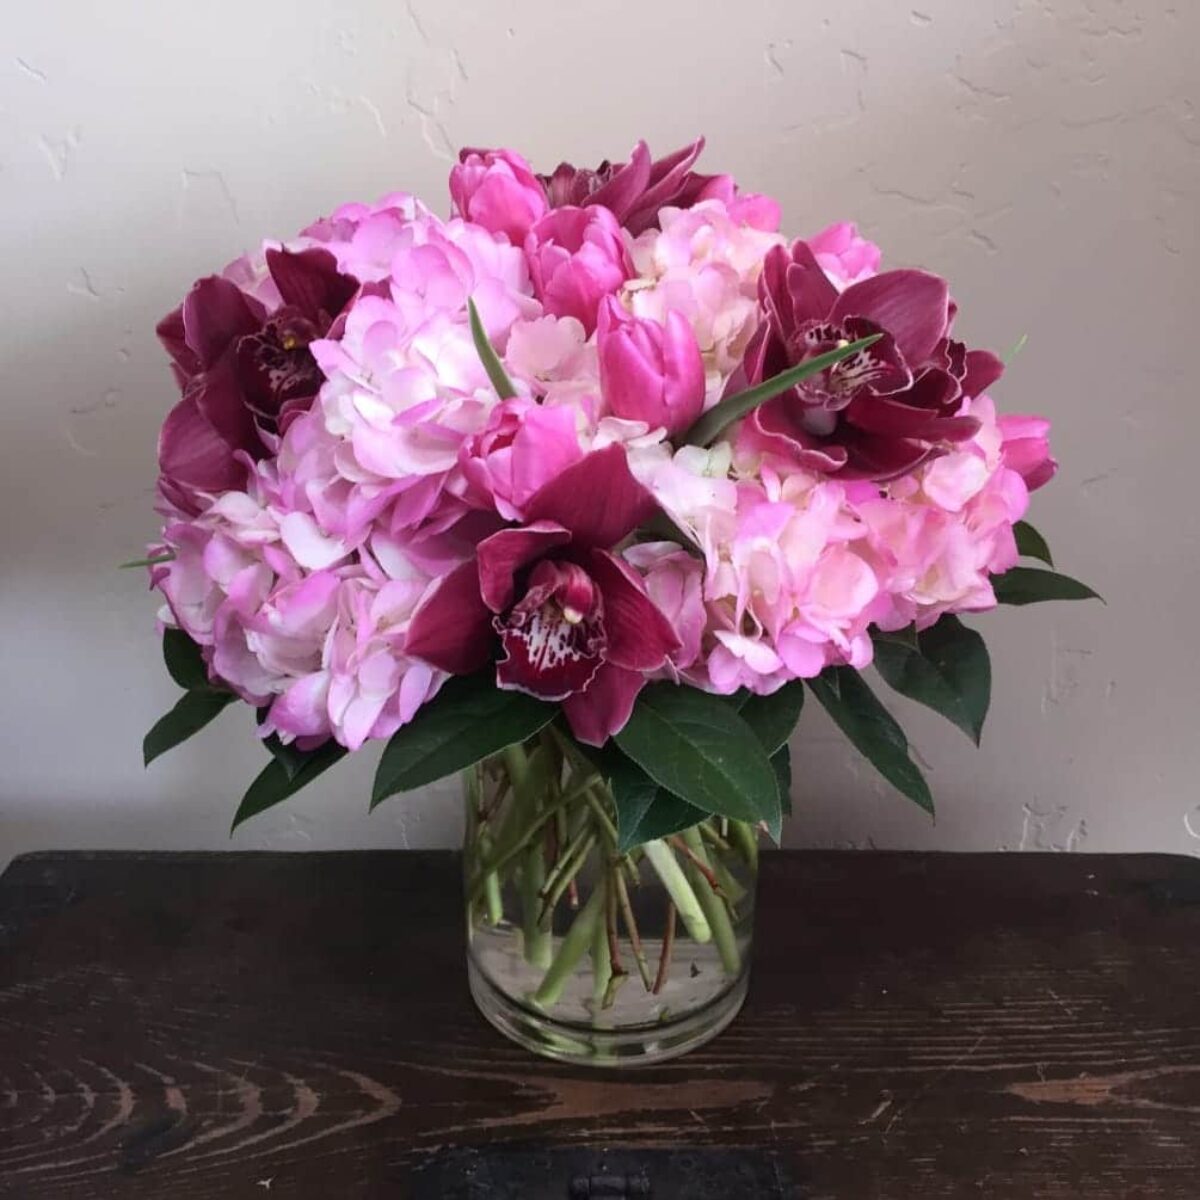 Leonardtown Florist - Flower Delivery by Towne Florist